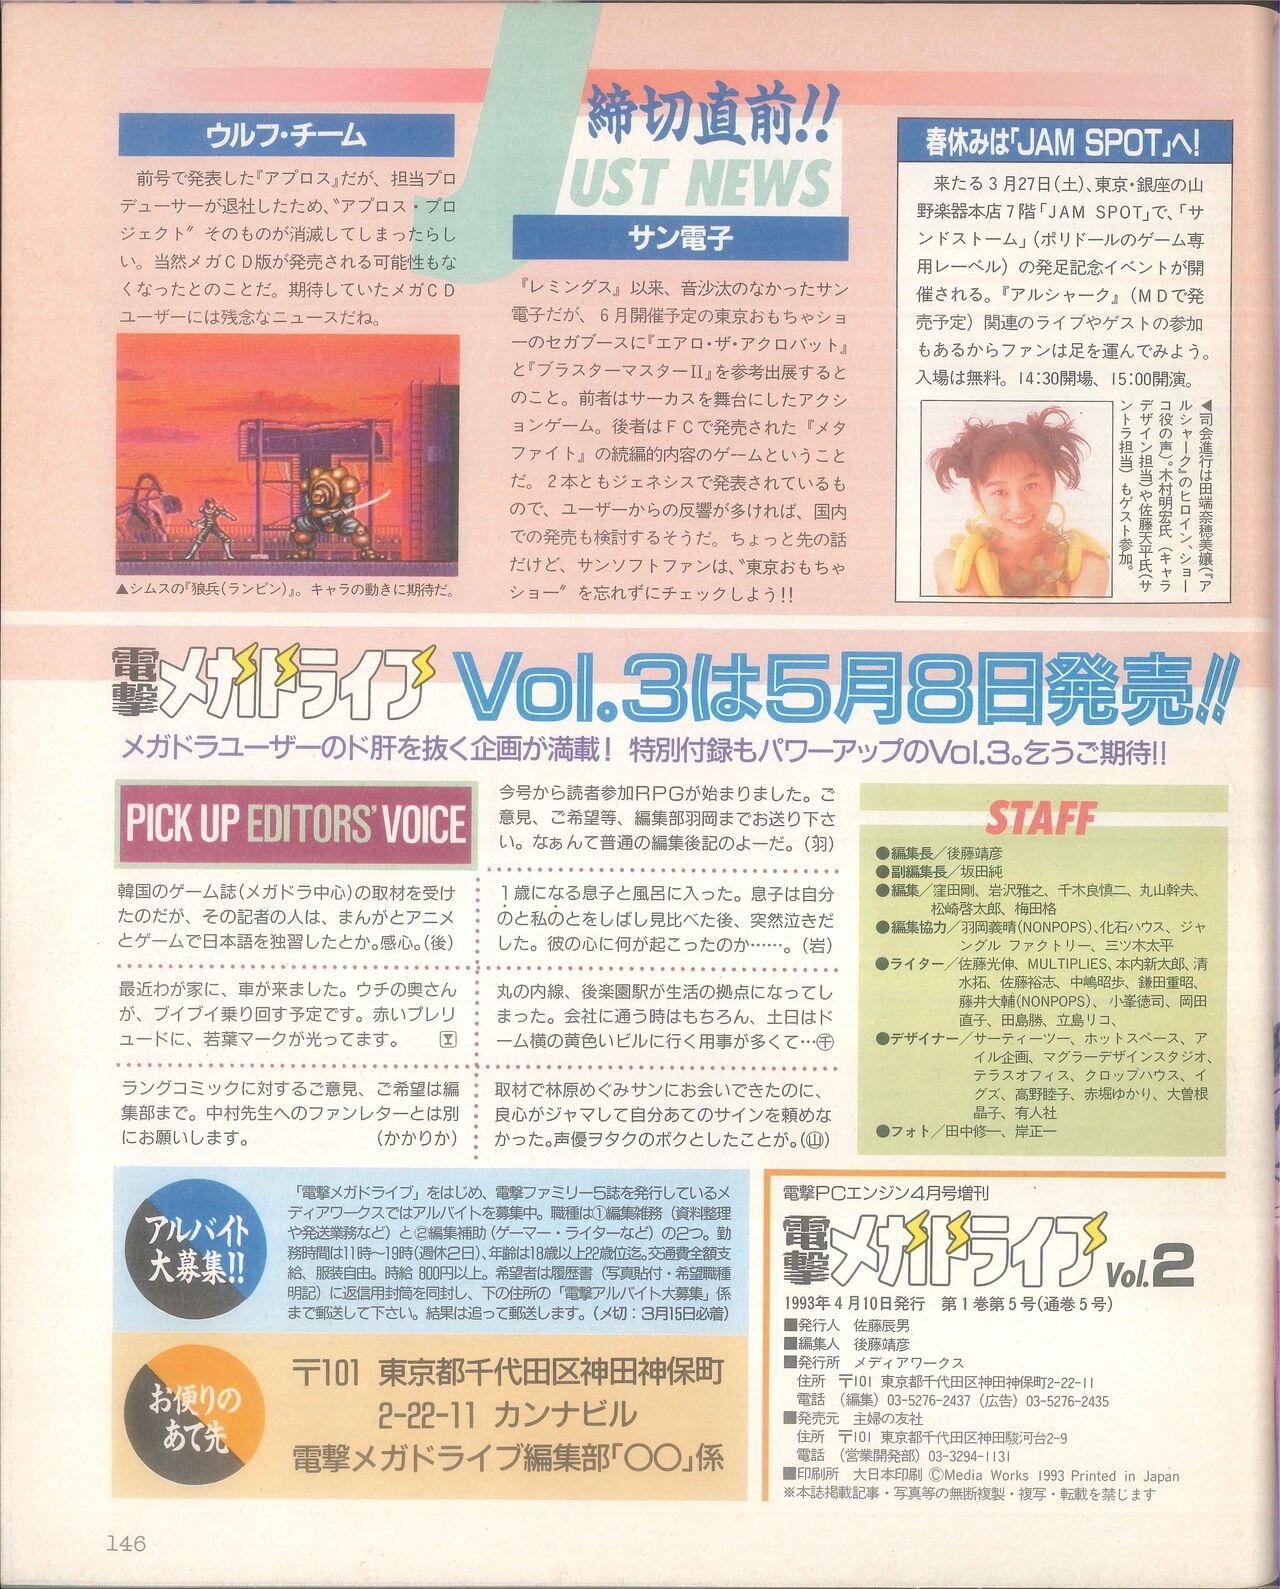 Dengeki Mega Drive Vol.2 (Sega Genesis) (April 1993) 75